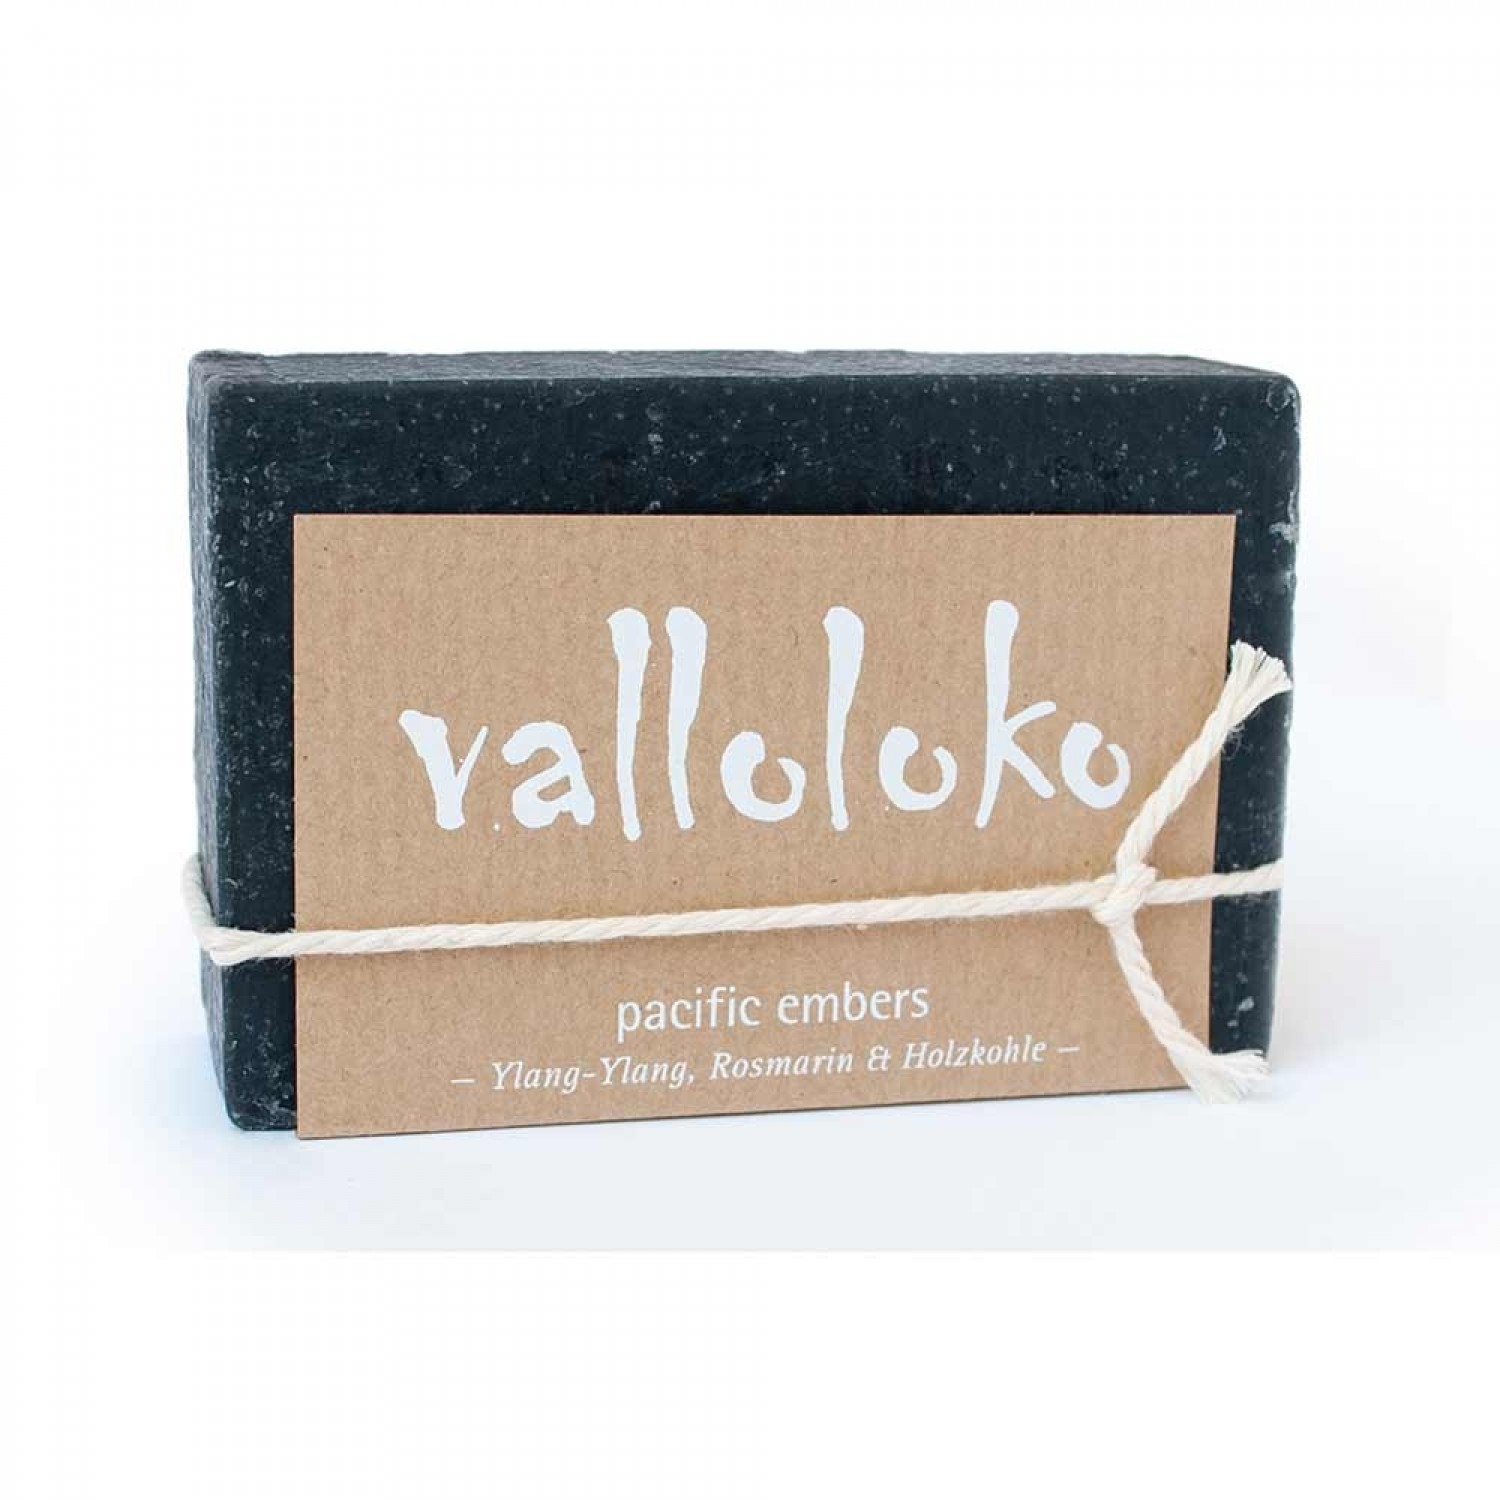 Öko Gesichts- und Körperseife Pacific Embers | Valloloko